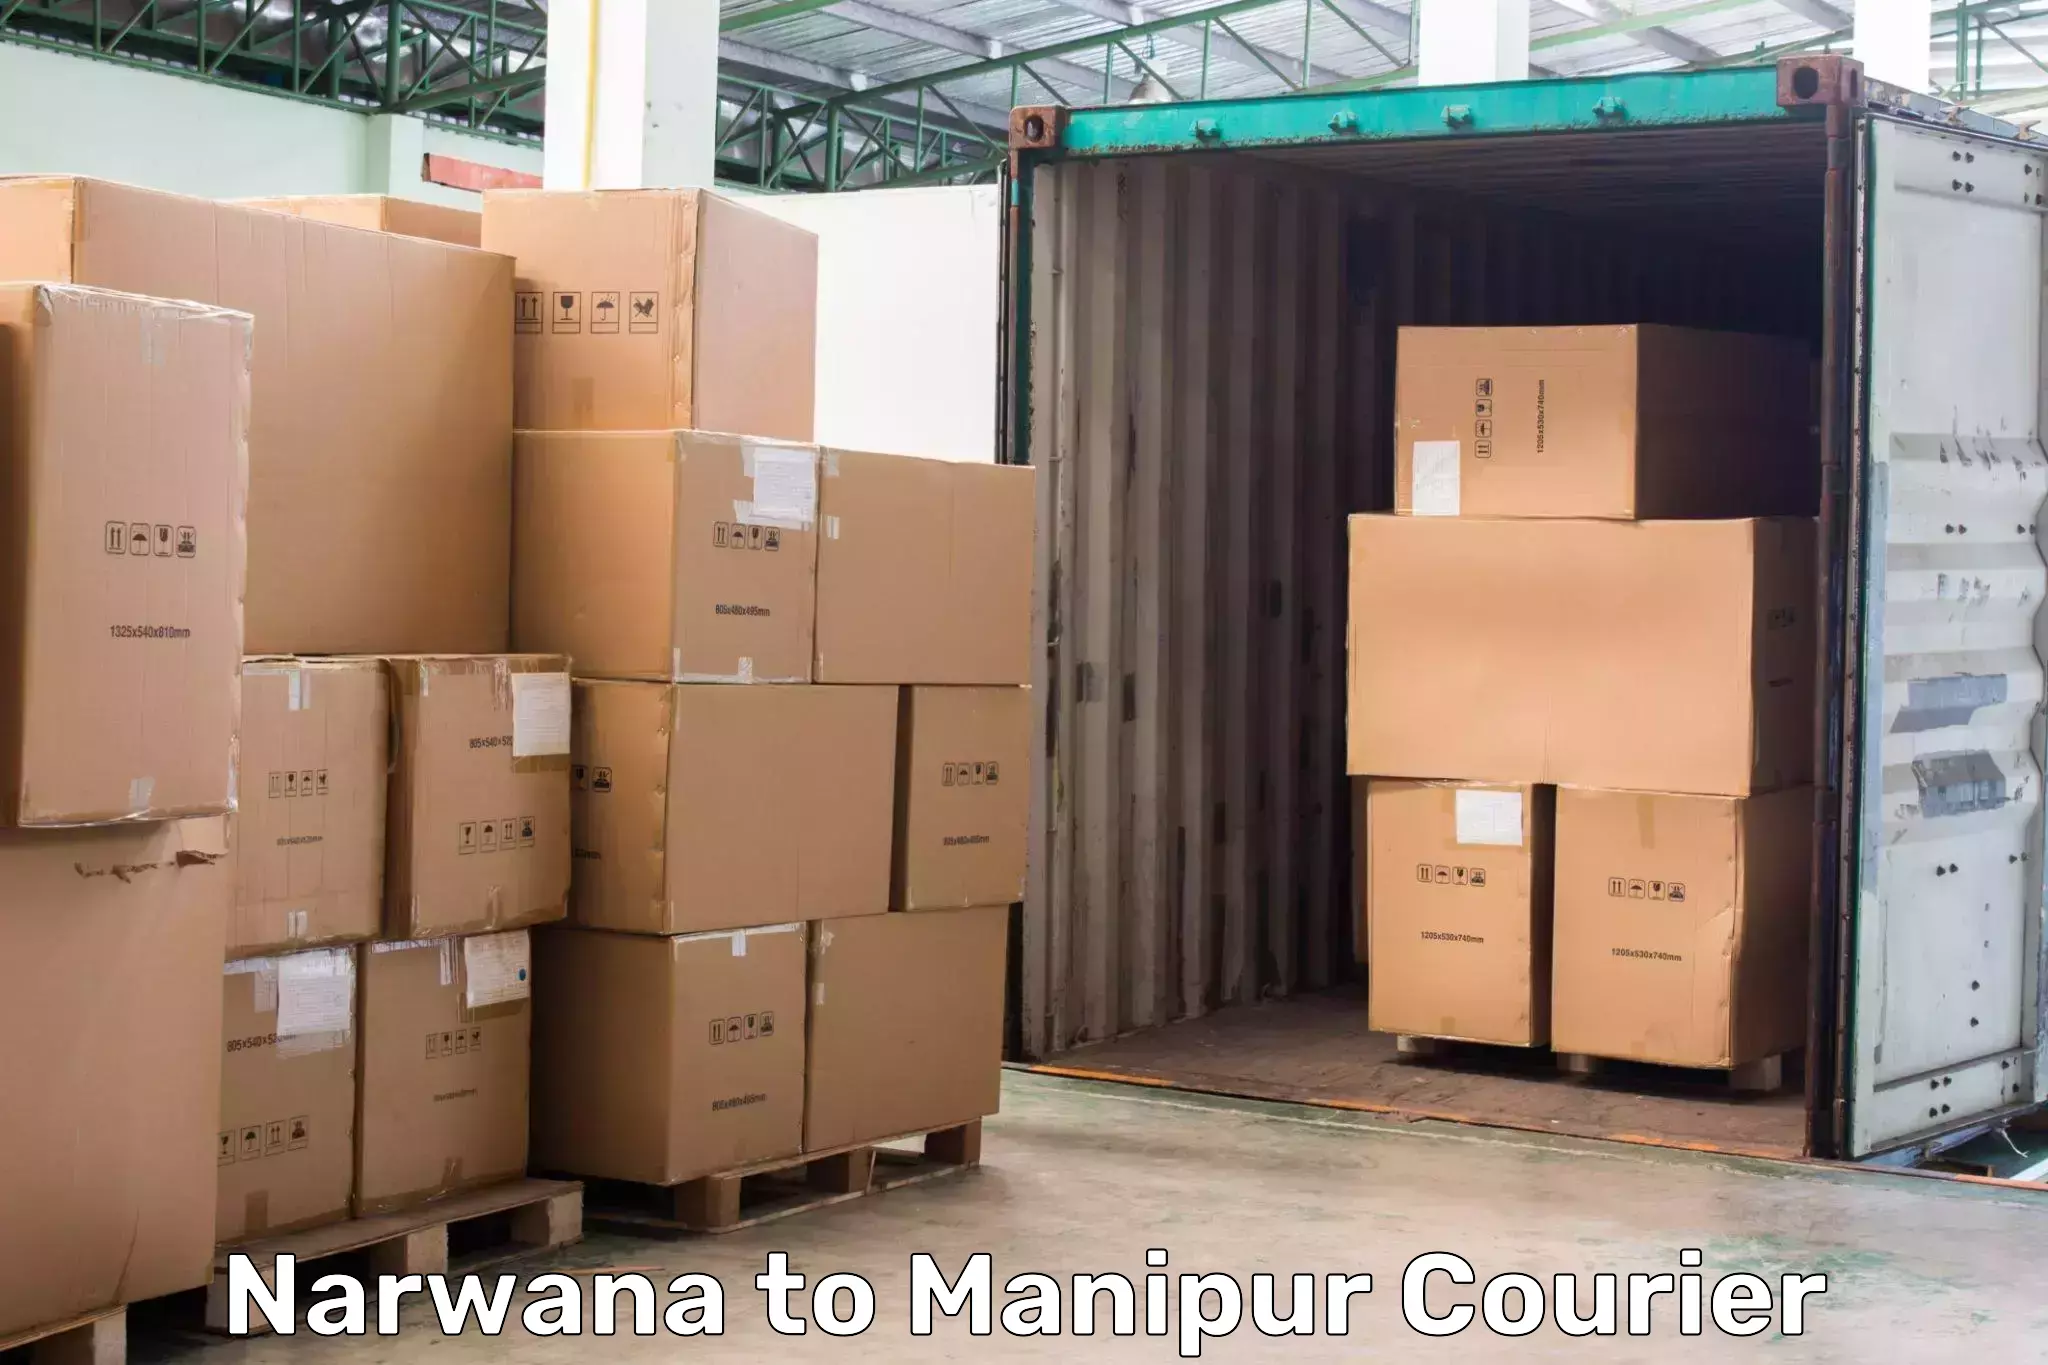 Global shipping networks Narwana to Moirang